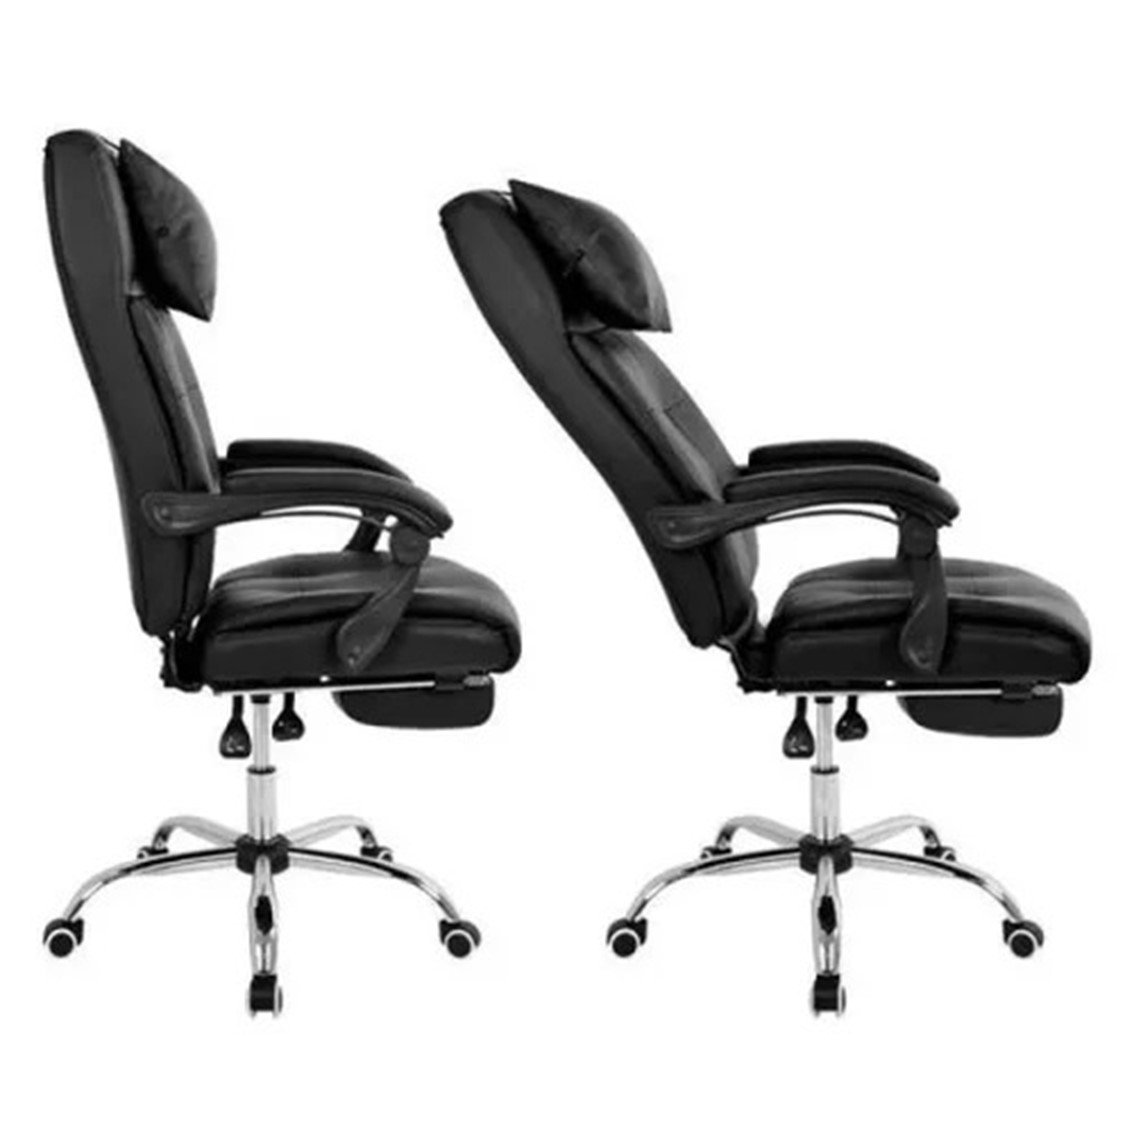 Cadeira Presidente Premium C300 com Regulagem e Apoio para Os Pés Rpc Preta - 6